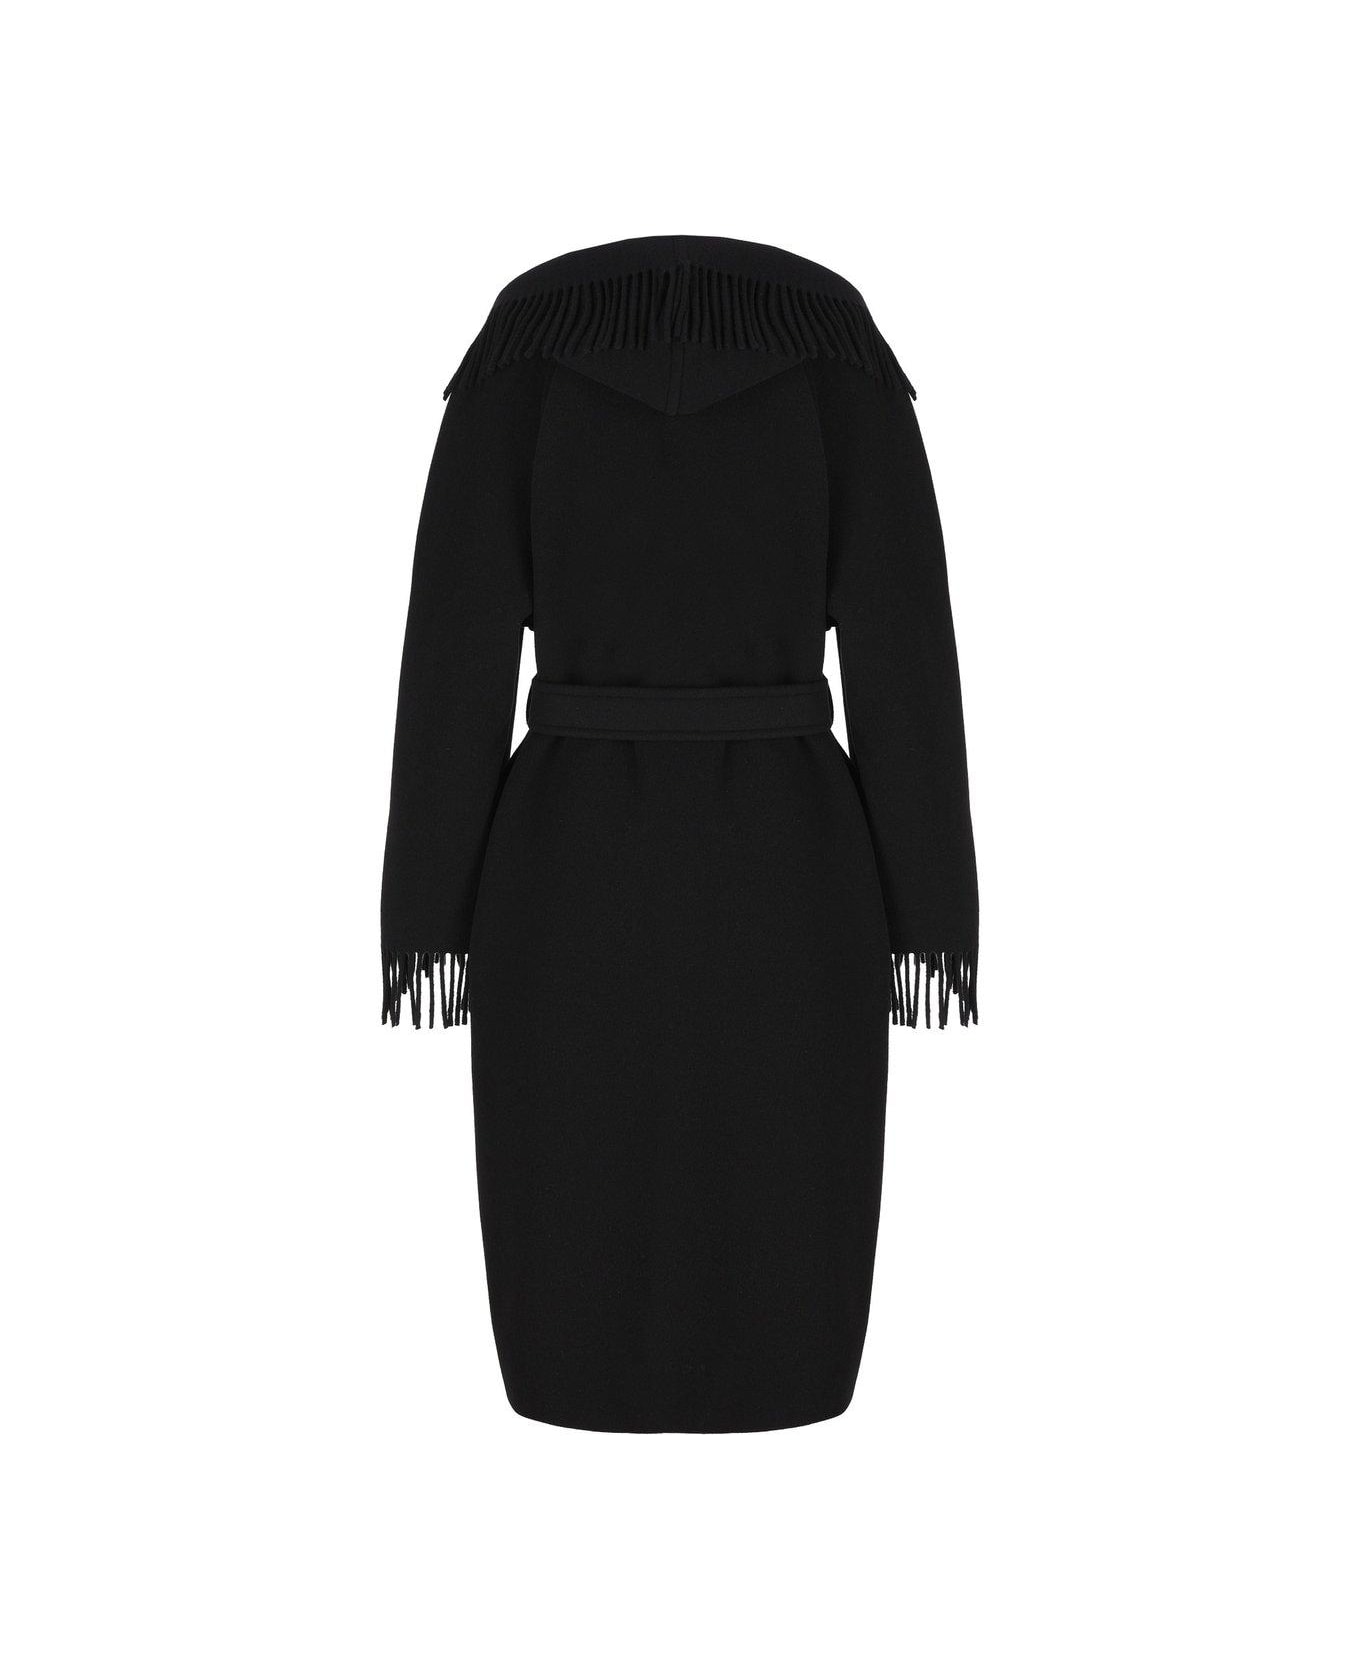 Balenciaga Belted Fringed Coat - BLACK コート